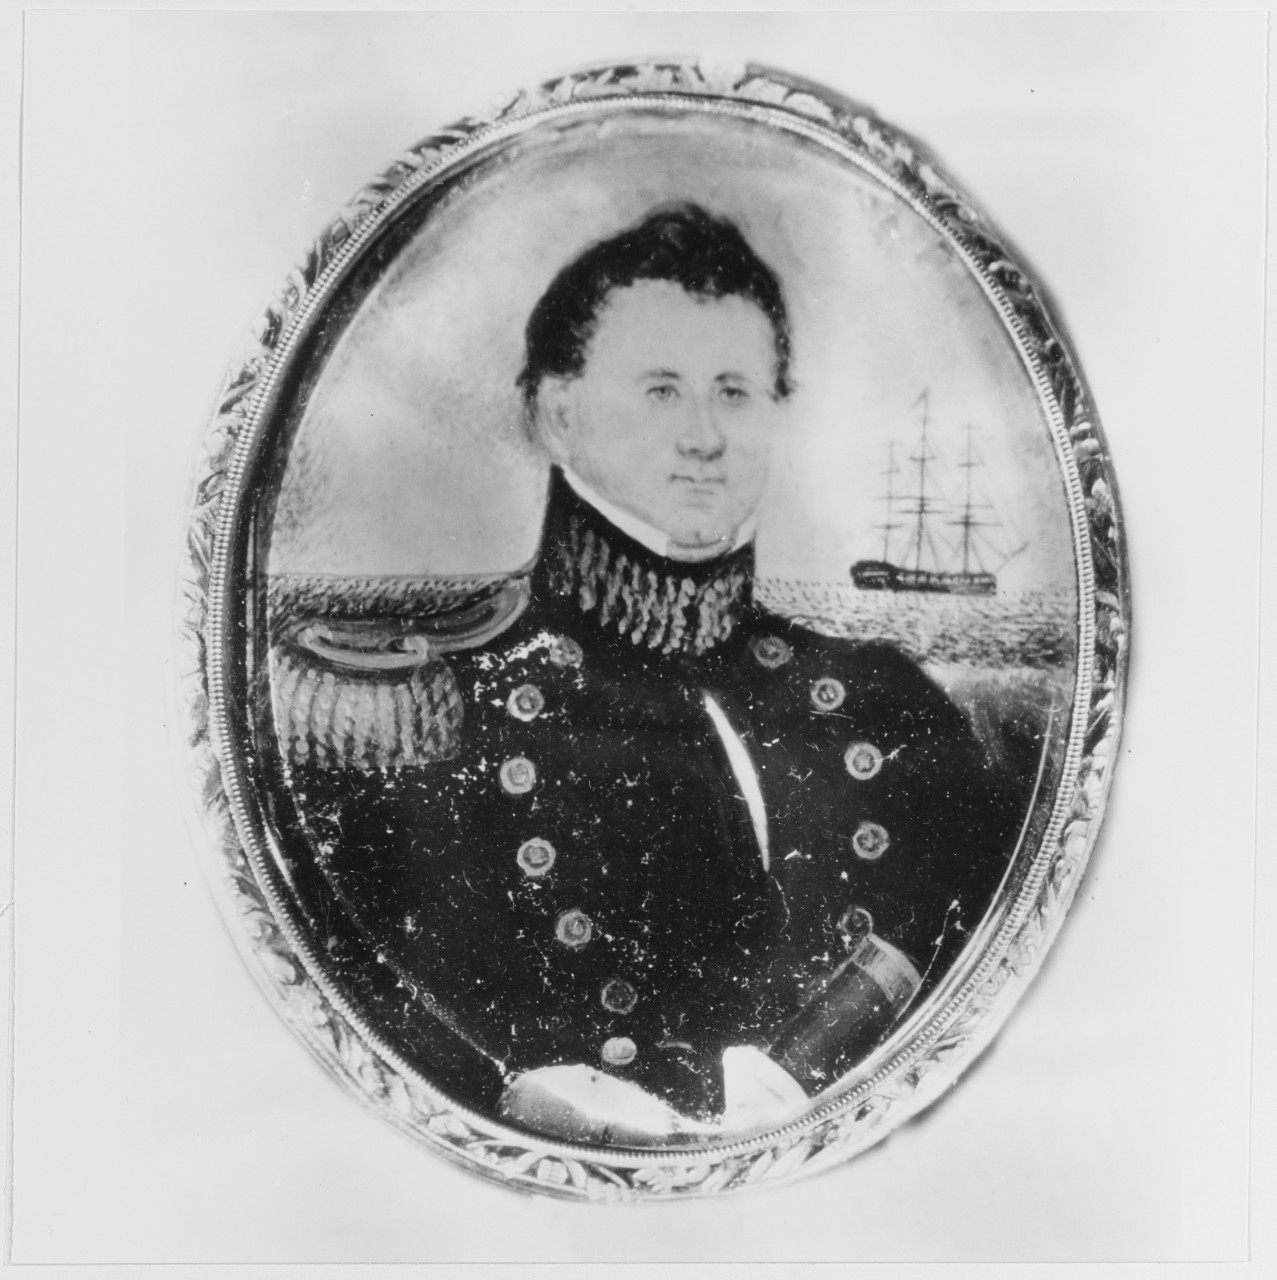 Lieutenant Jesse D. Elliott, USN